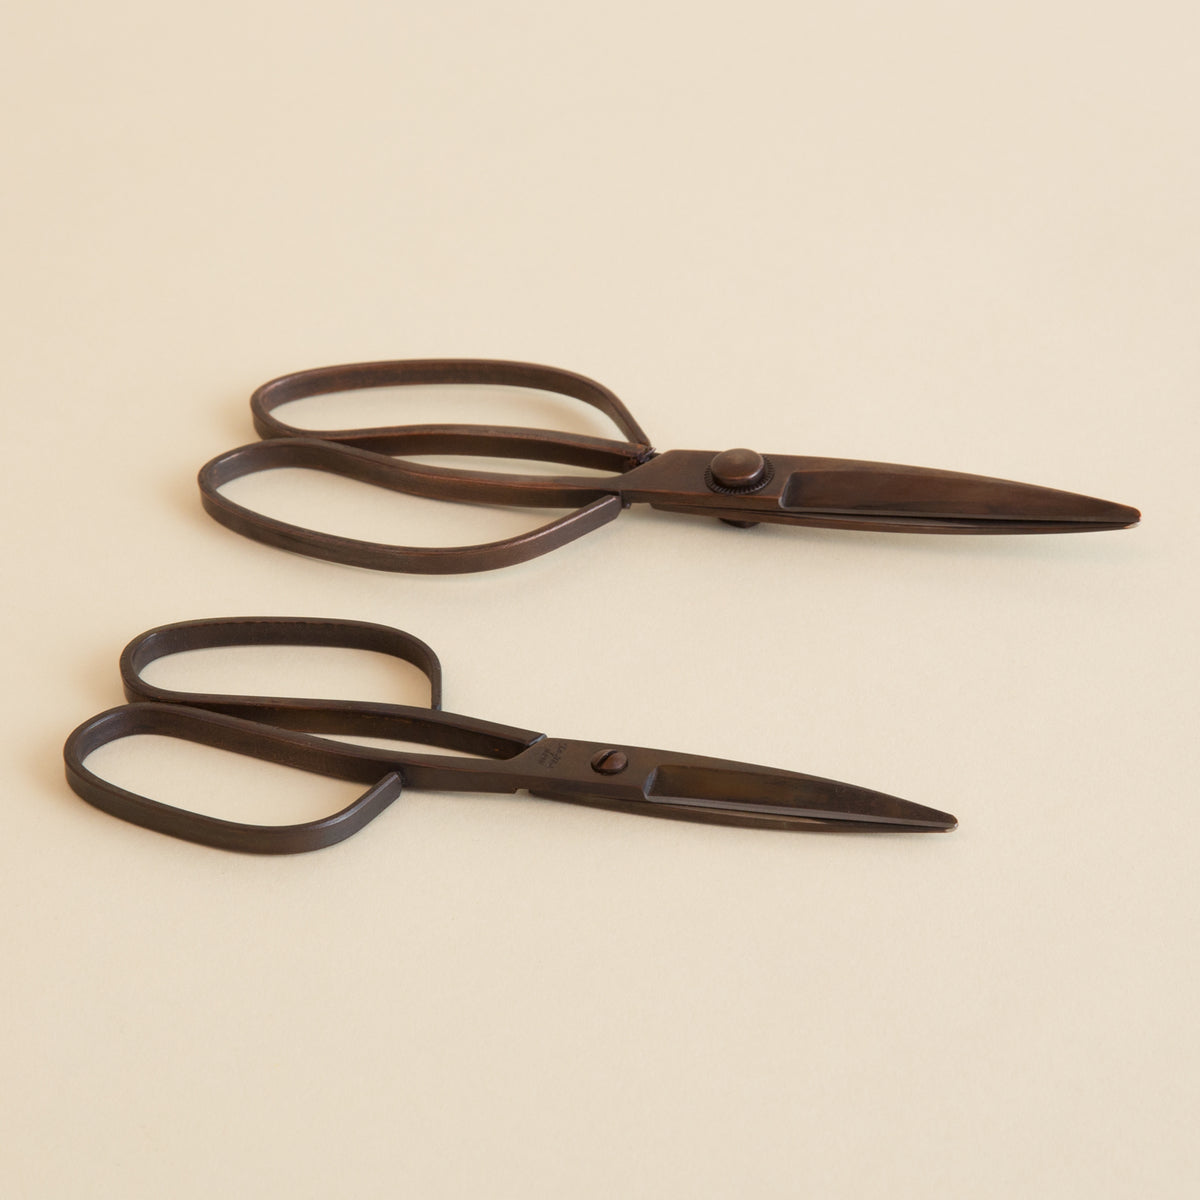 Copper Scissors